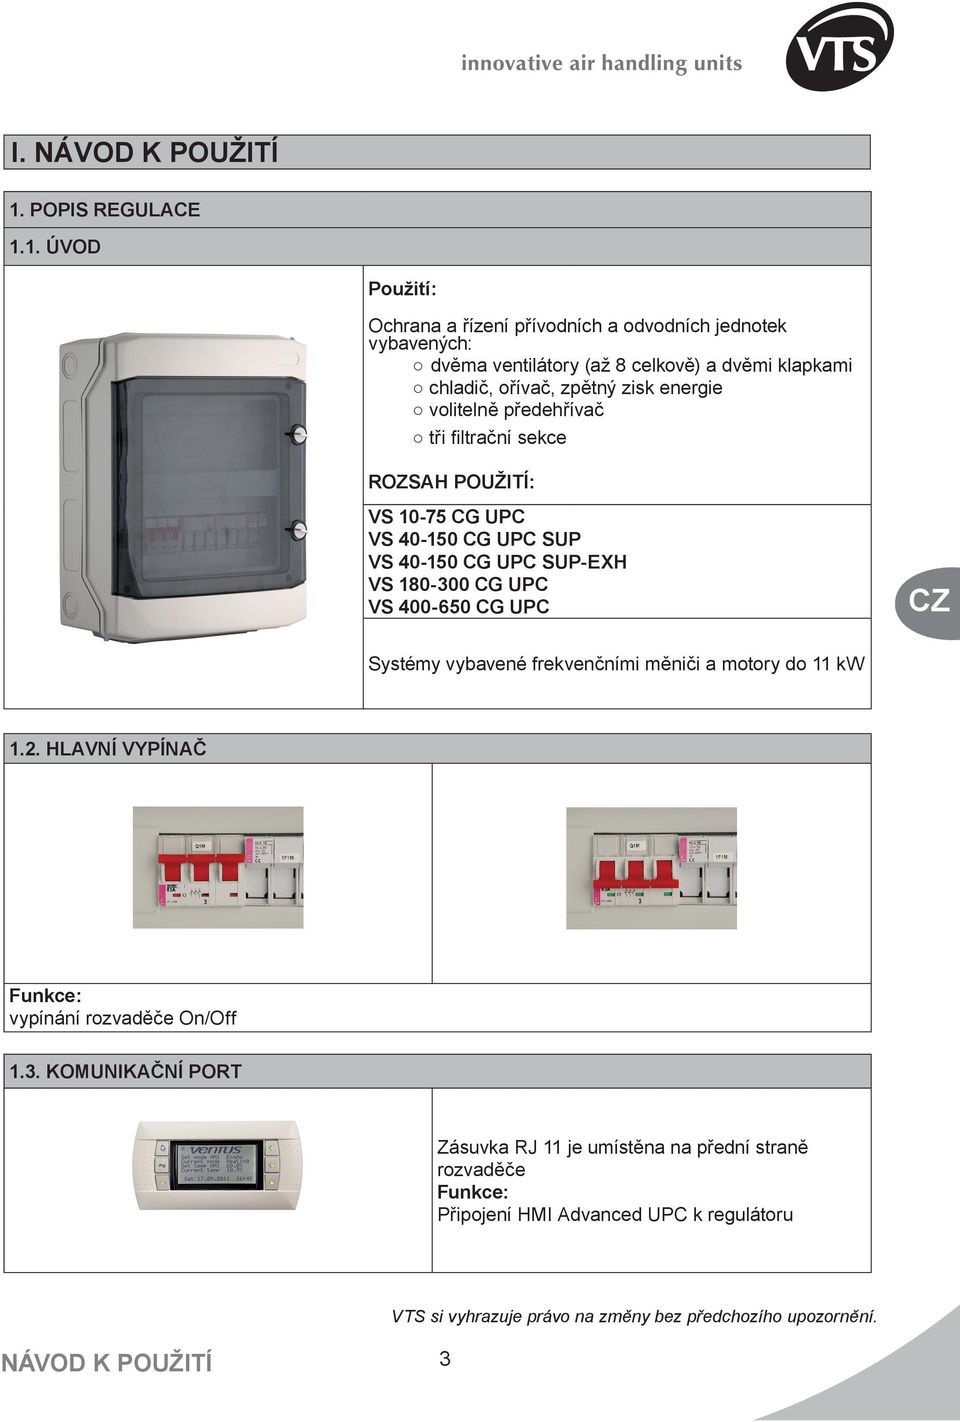 1. ÚVOD Použití: Ochrana a řízení přívodních a odvodních jednotek vybavených: dvěma ventilátory (až 8 celkově) a dvěmi klapkami chladič, ořívač, zpětný